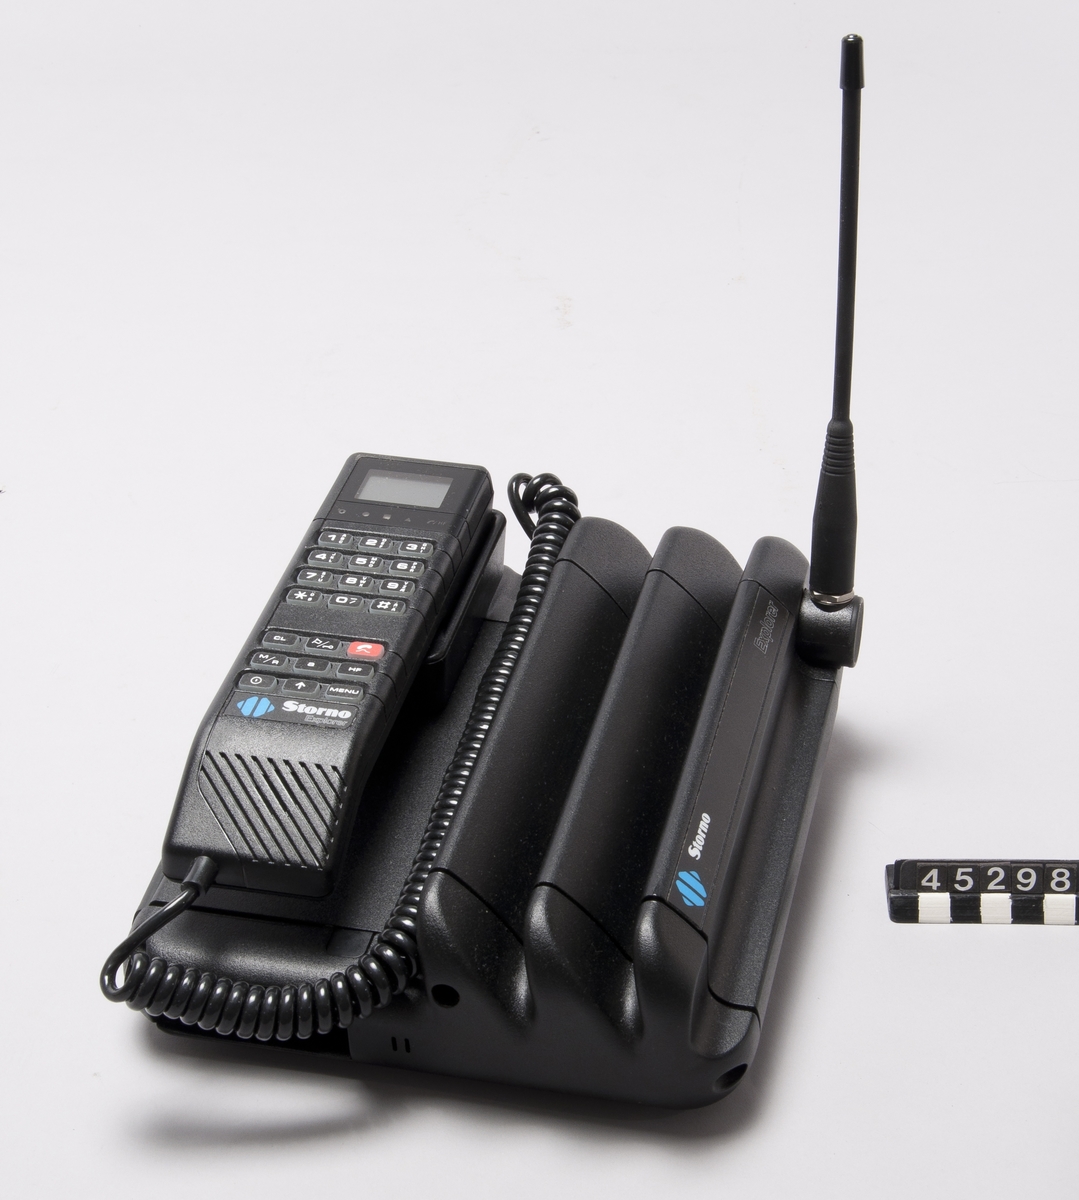 Mobiltelefon Storno Explorer NMT450 med handenhet och basenhet samt antenn.  Den har uppladdningsbart batteri (märkt.CCS2312AVBN, 12v,2,3Ah), kan anslutas till 220V, samt har laddare märkt Motorola Kit no CCPN 4012 A (själva laddaren märkt: MASCOT CCPN 4012A/ 51R02530Z02, Type 8620) och medföljande 12V adapter kontakt för cigarettuttag  Manual ingår.  Basenhet typ S-CCUE2038B ser no 480RTL2545, handenhet typ CCCN3001A ser no 480RTL2545.